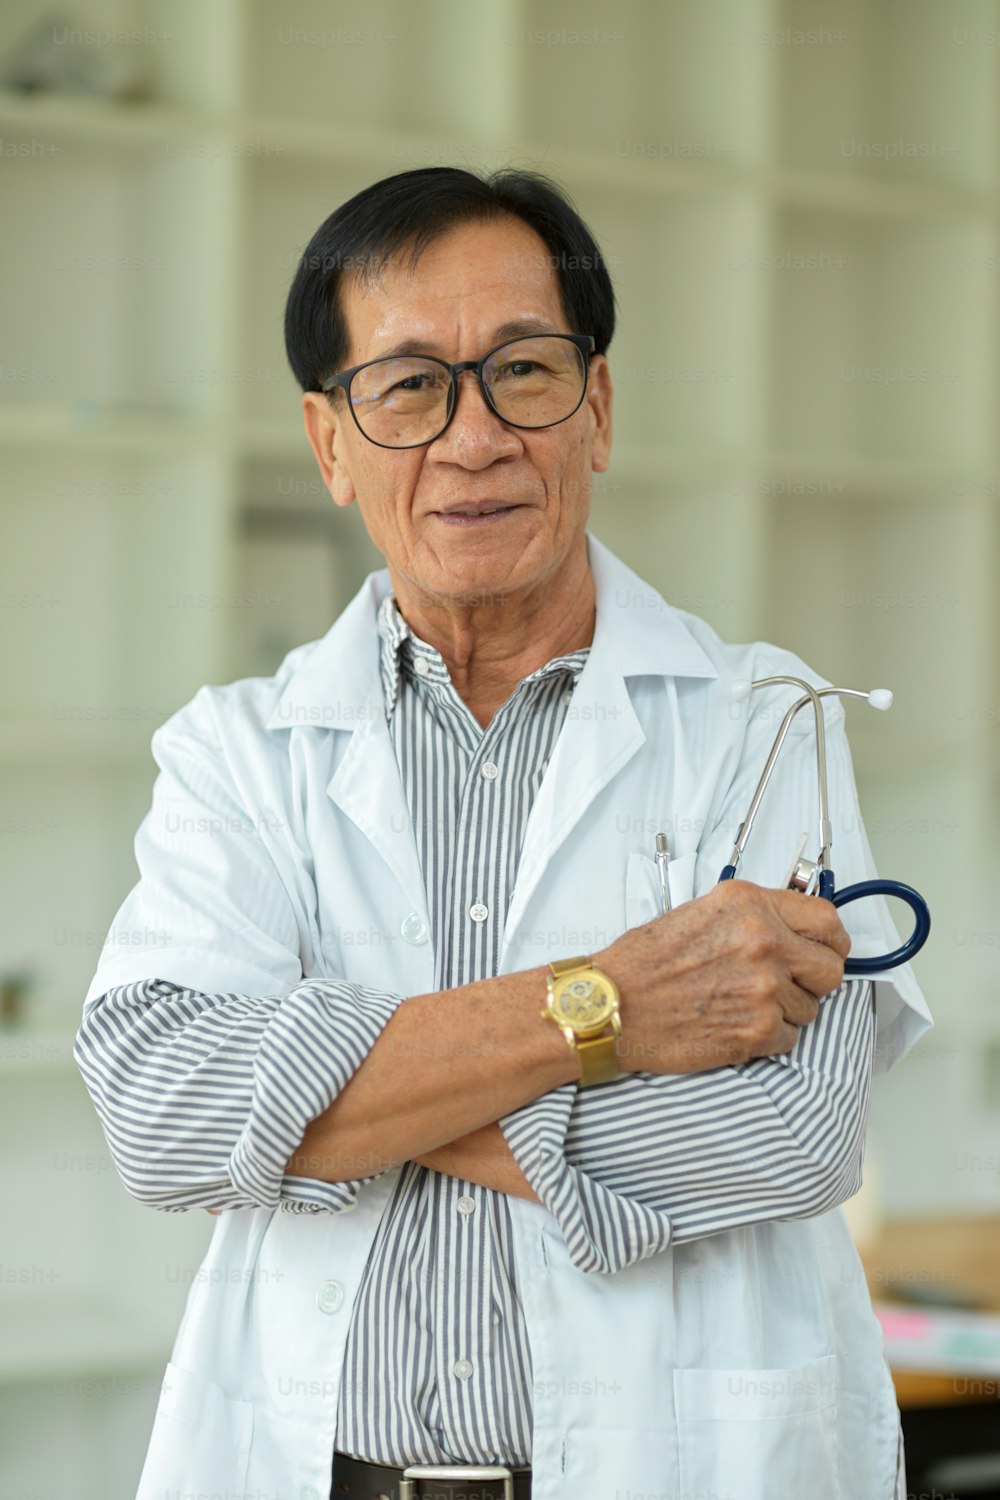 Retrato de un médico especialista de mediana edad exitoso y seguro de sí mismo cruzado de brazos en bata médica blanca.